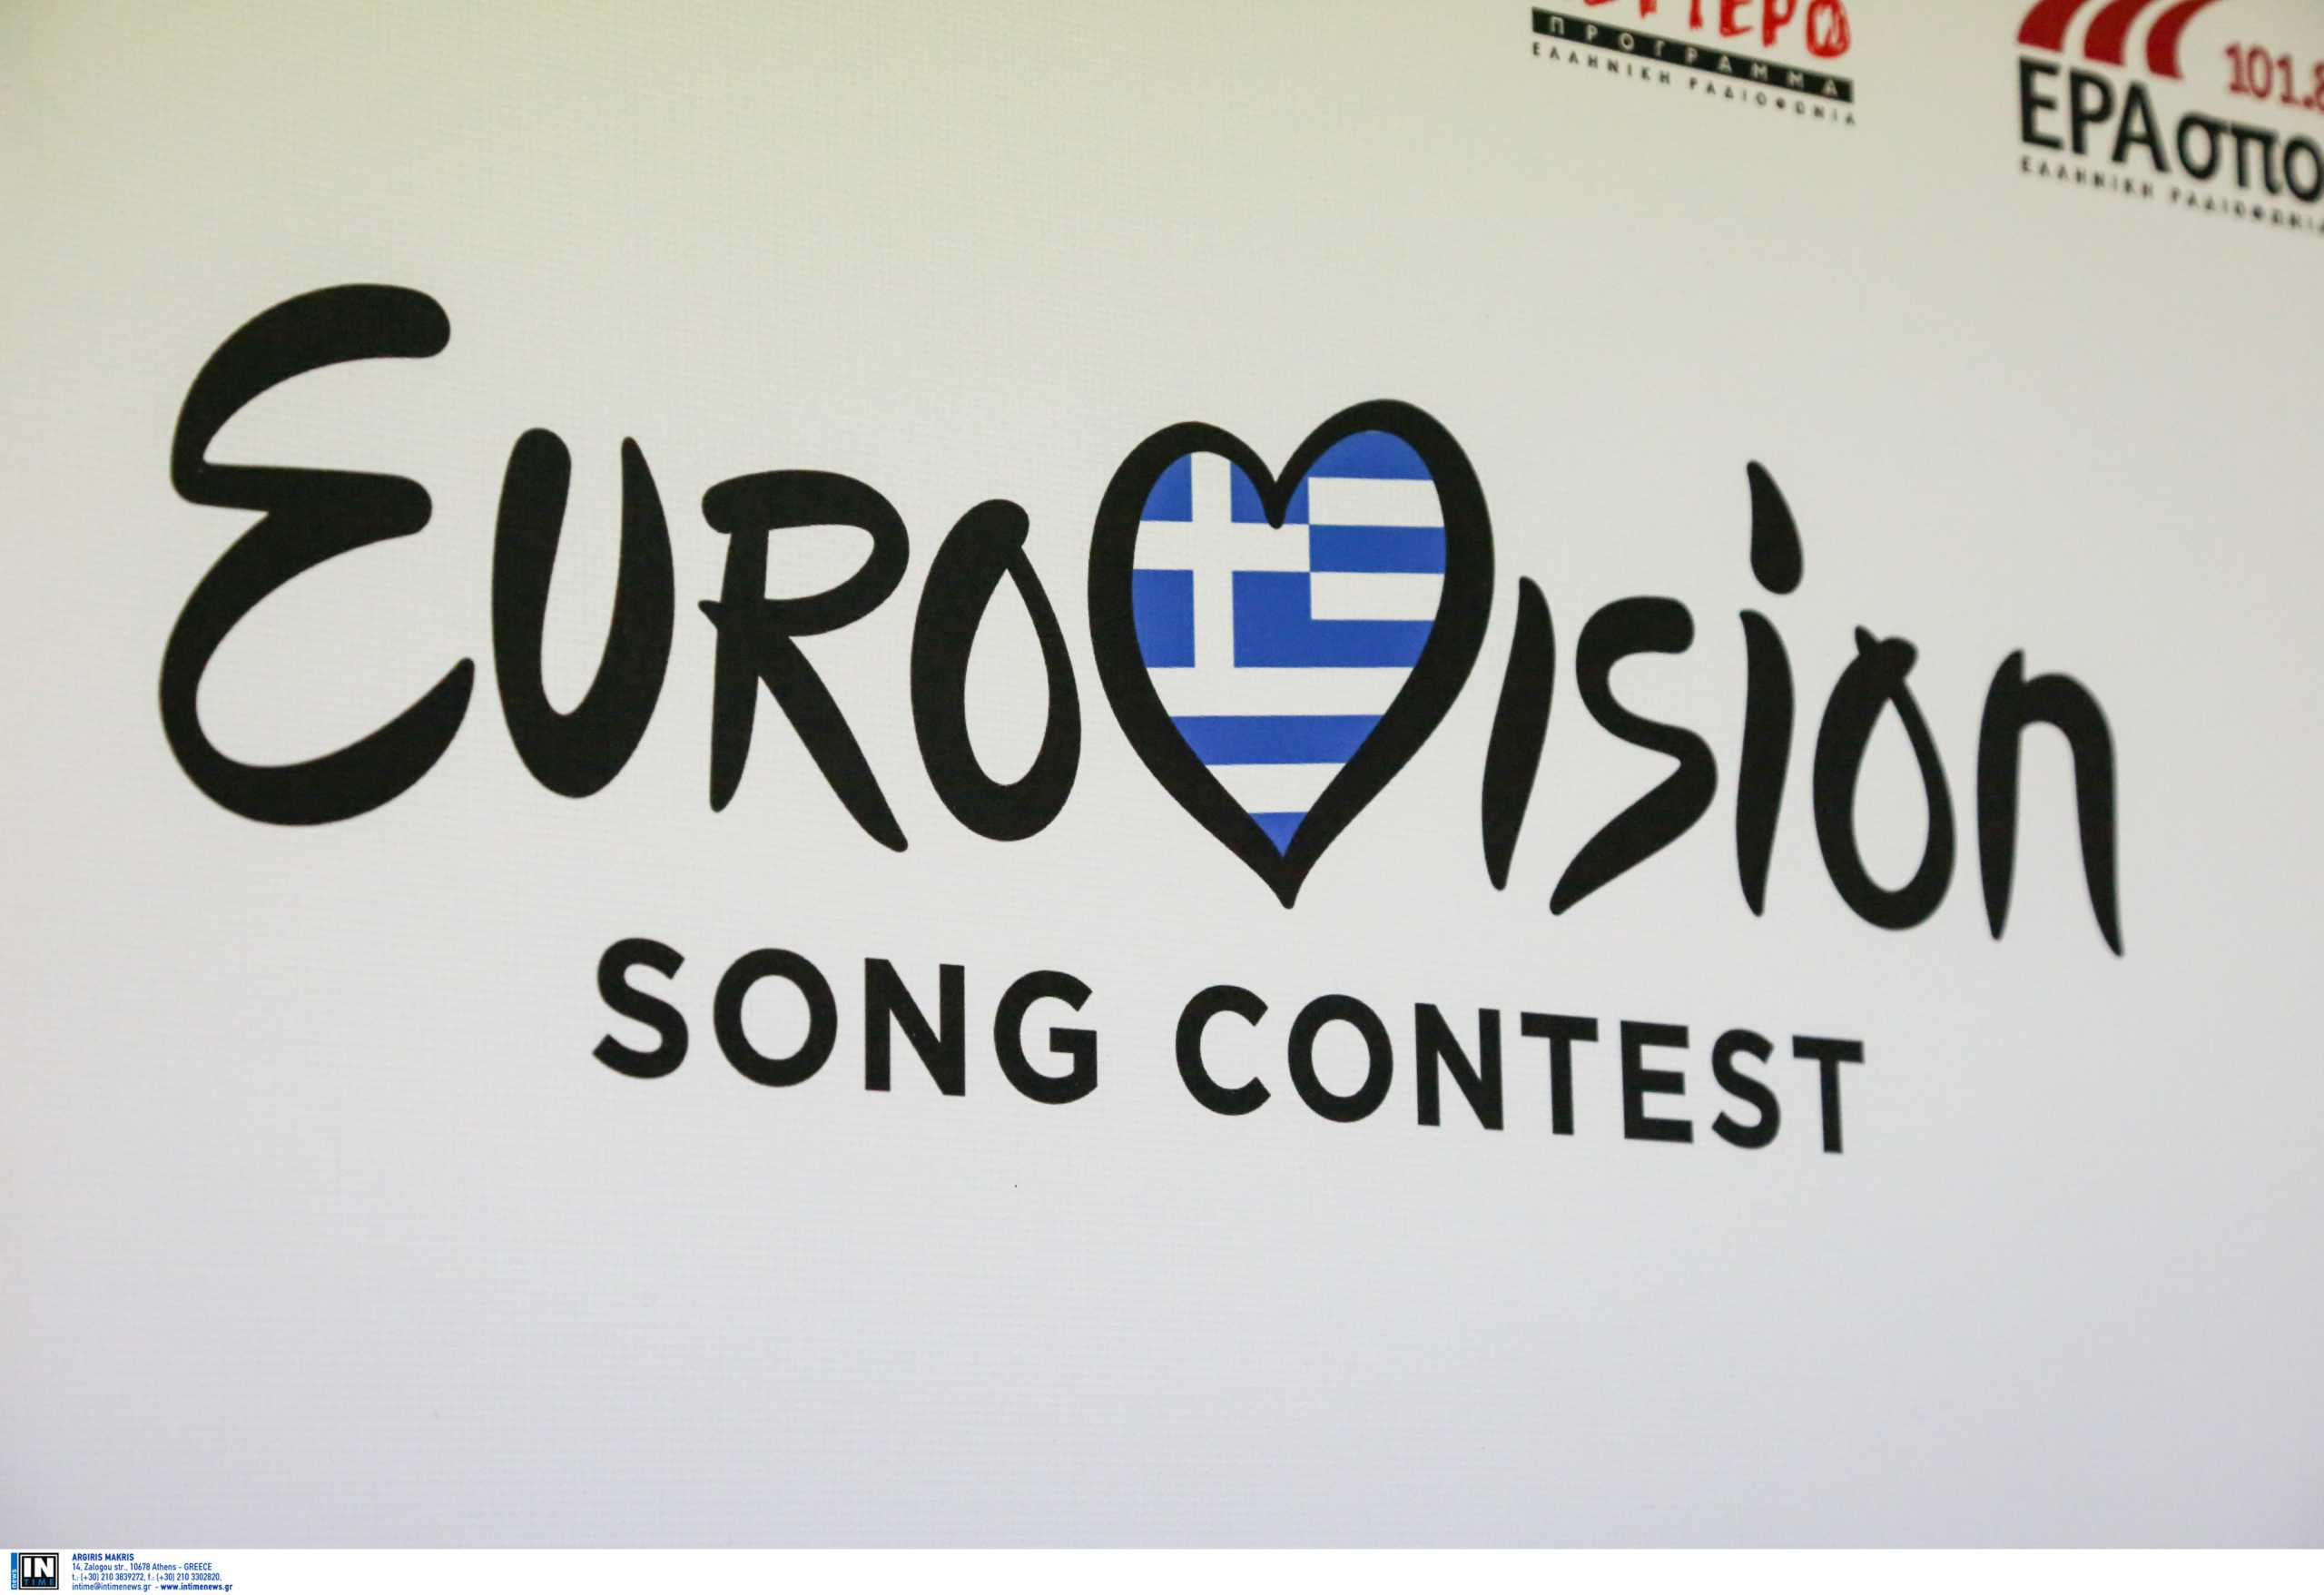 Στις 10 Μαρτίου η παρουσίαση της φετινής συμμετοχής στην Eurovision